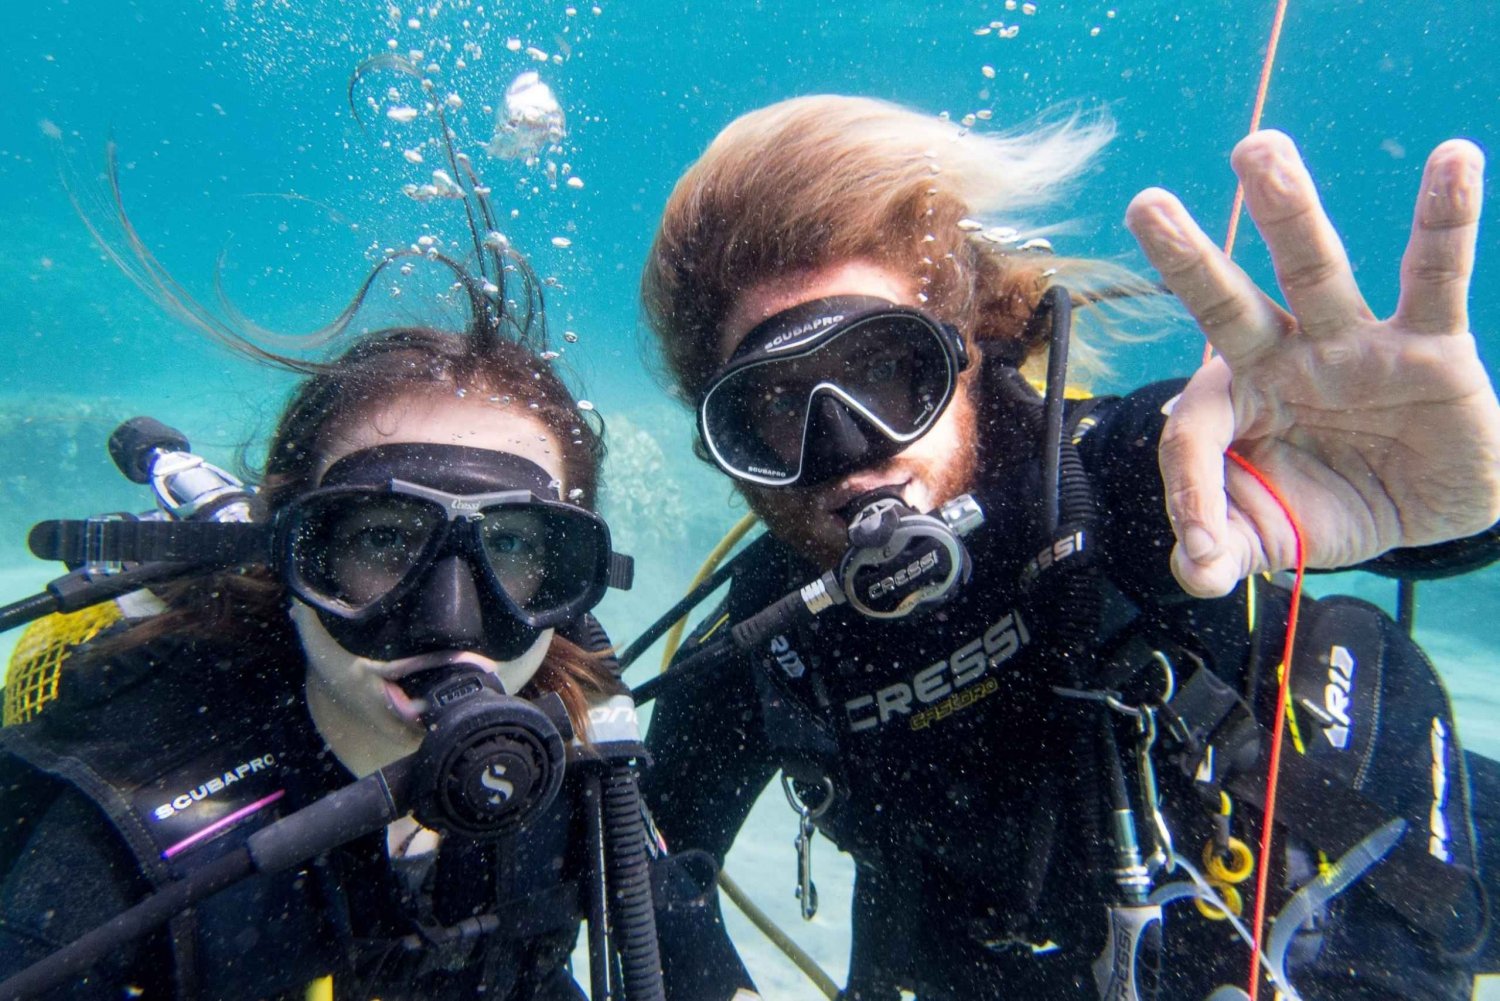 Santa Ponsa: Prova på dykning i ett marinreservat